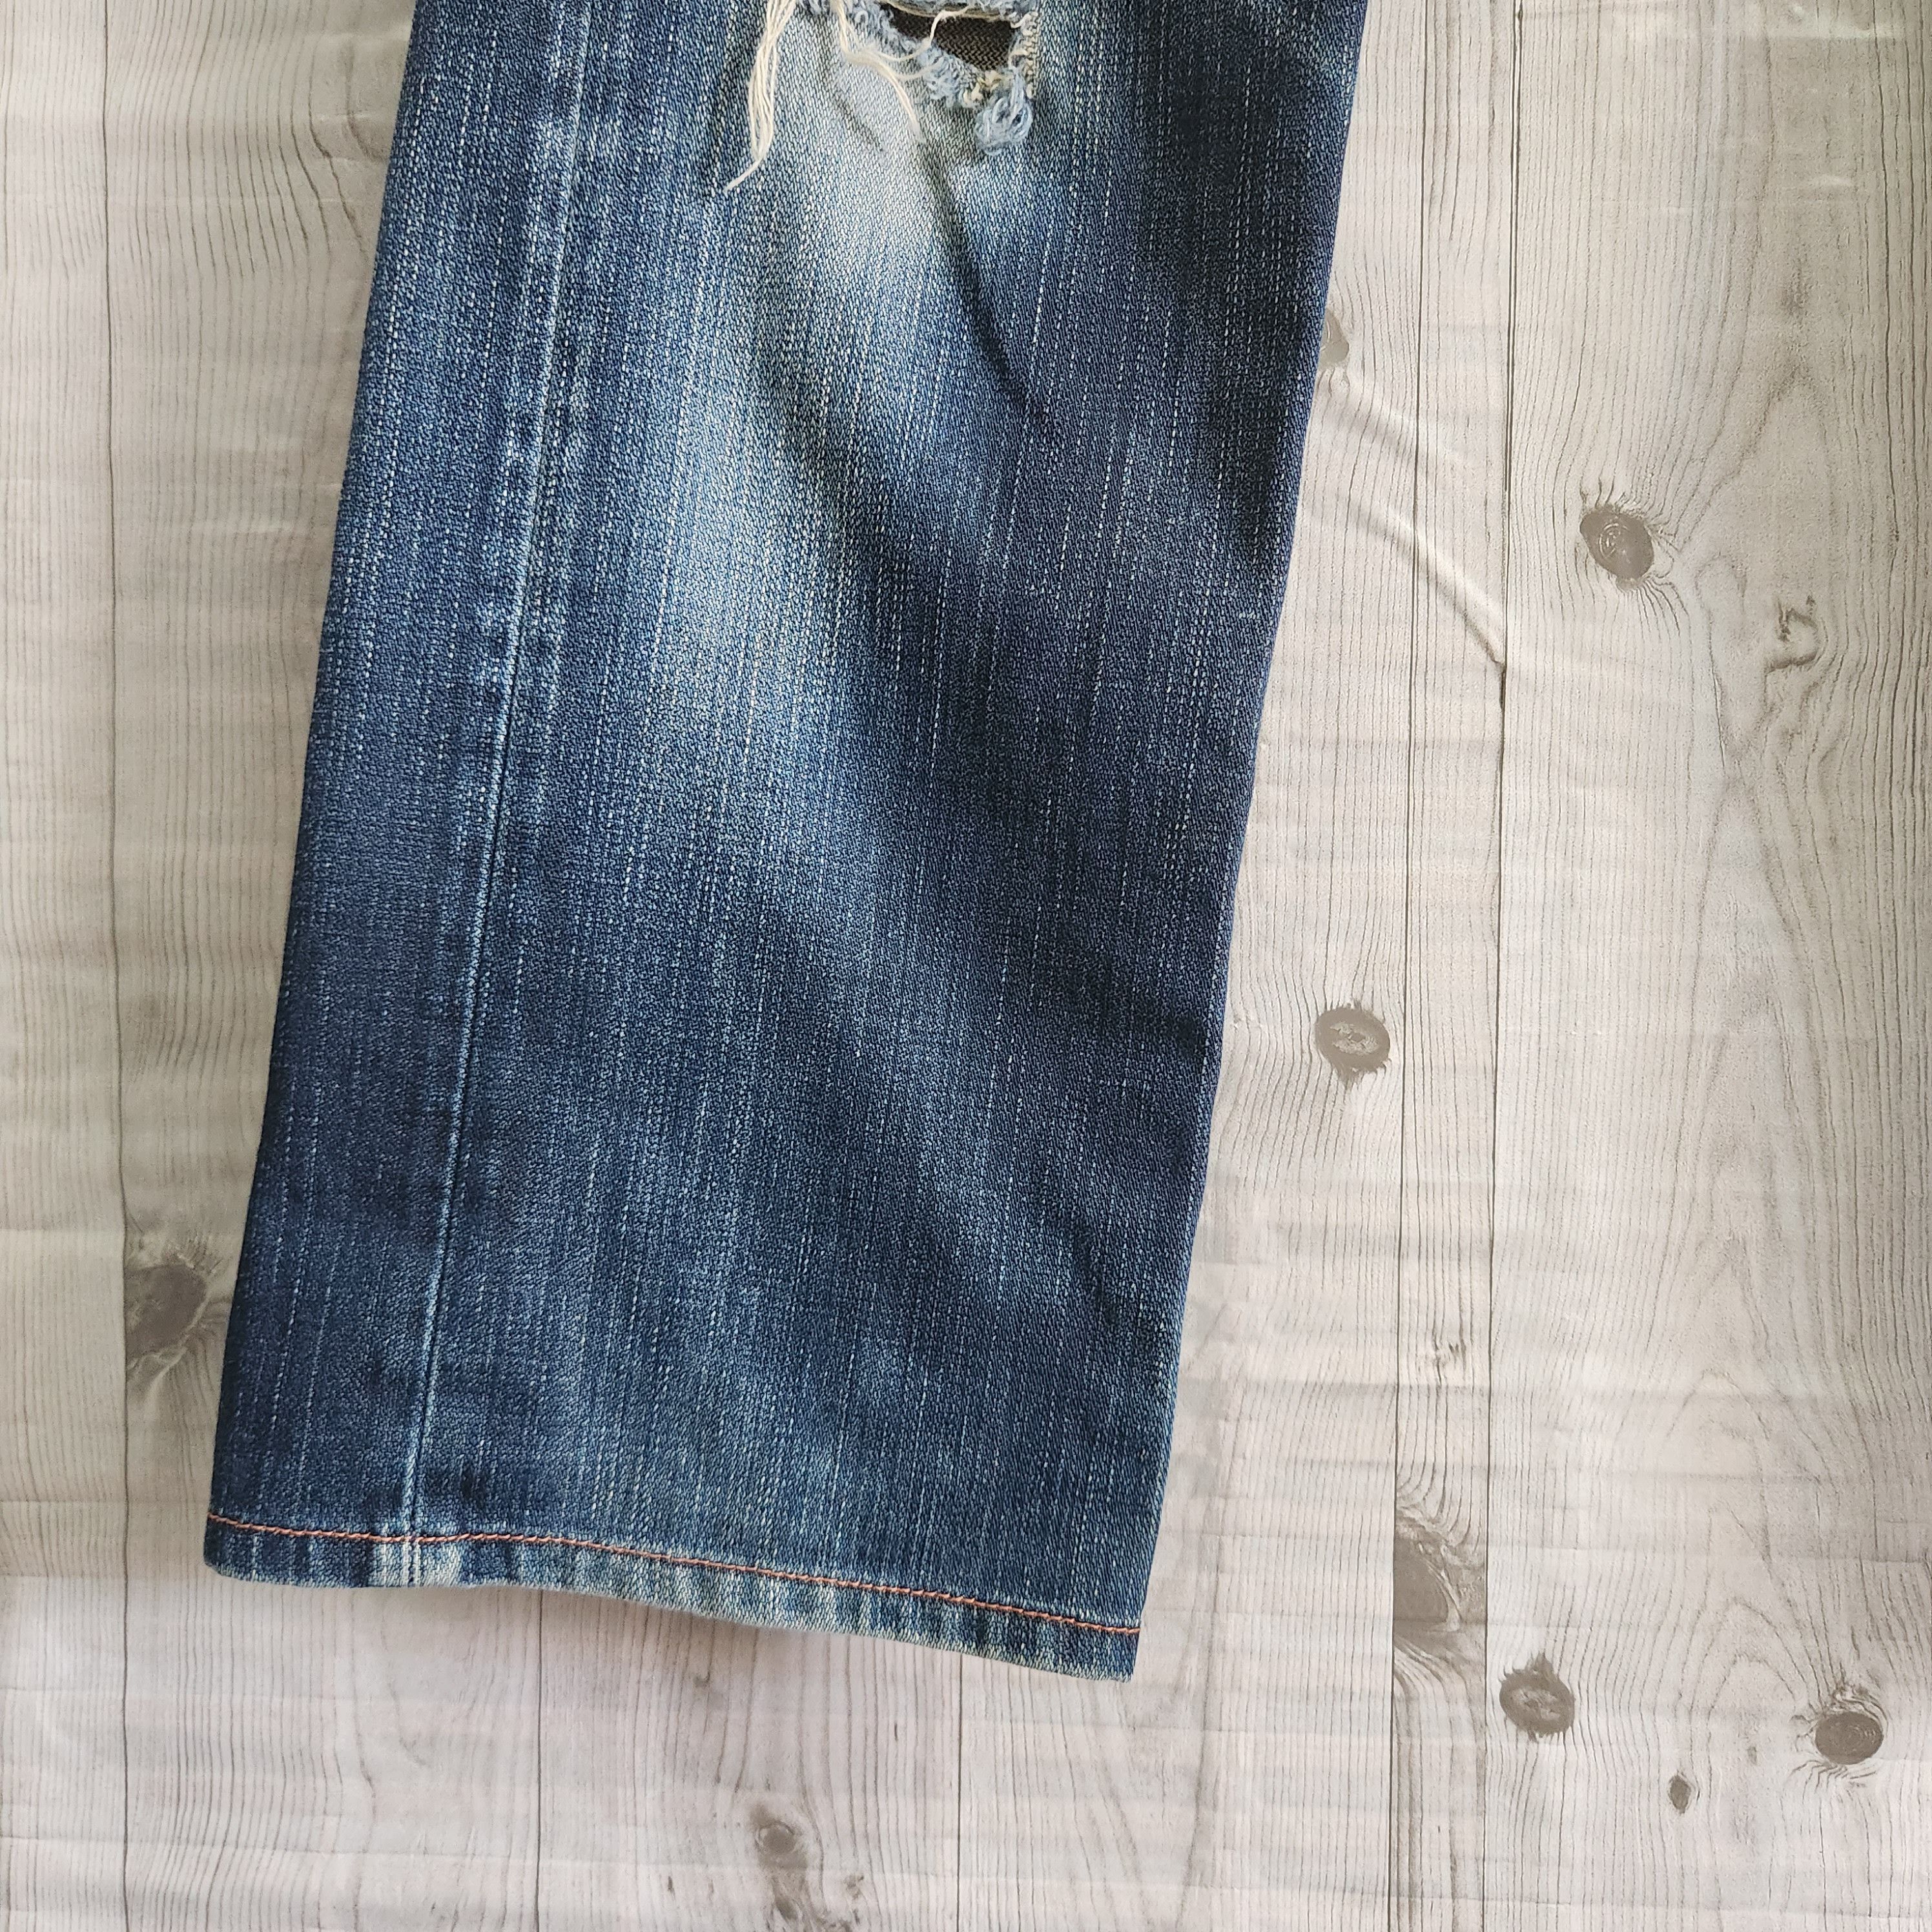 Levis 505 Premium Distressed Denim Jeans - 15